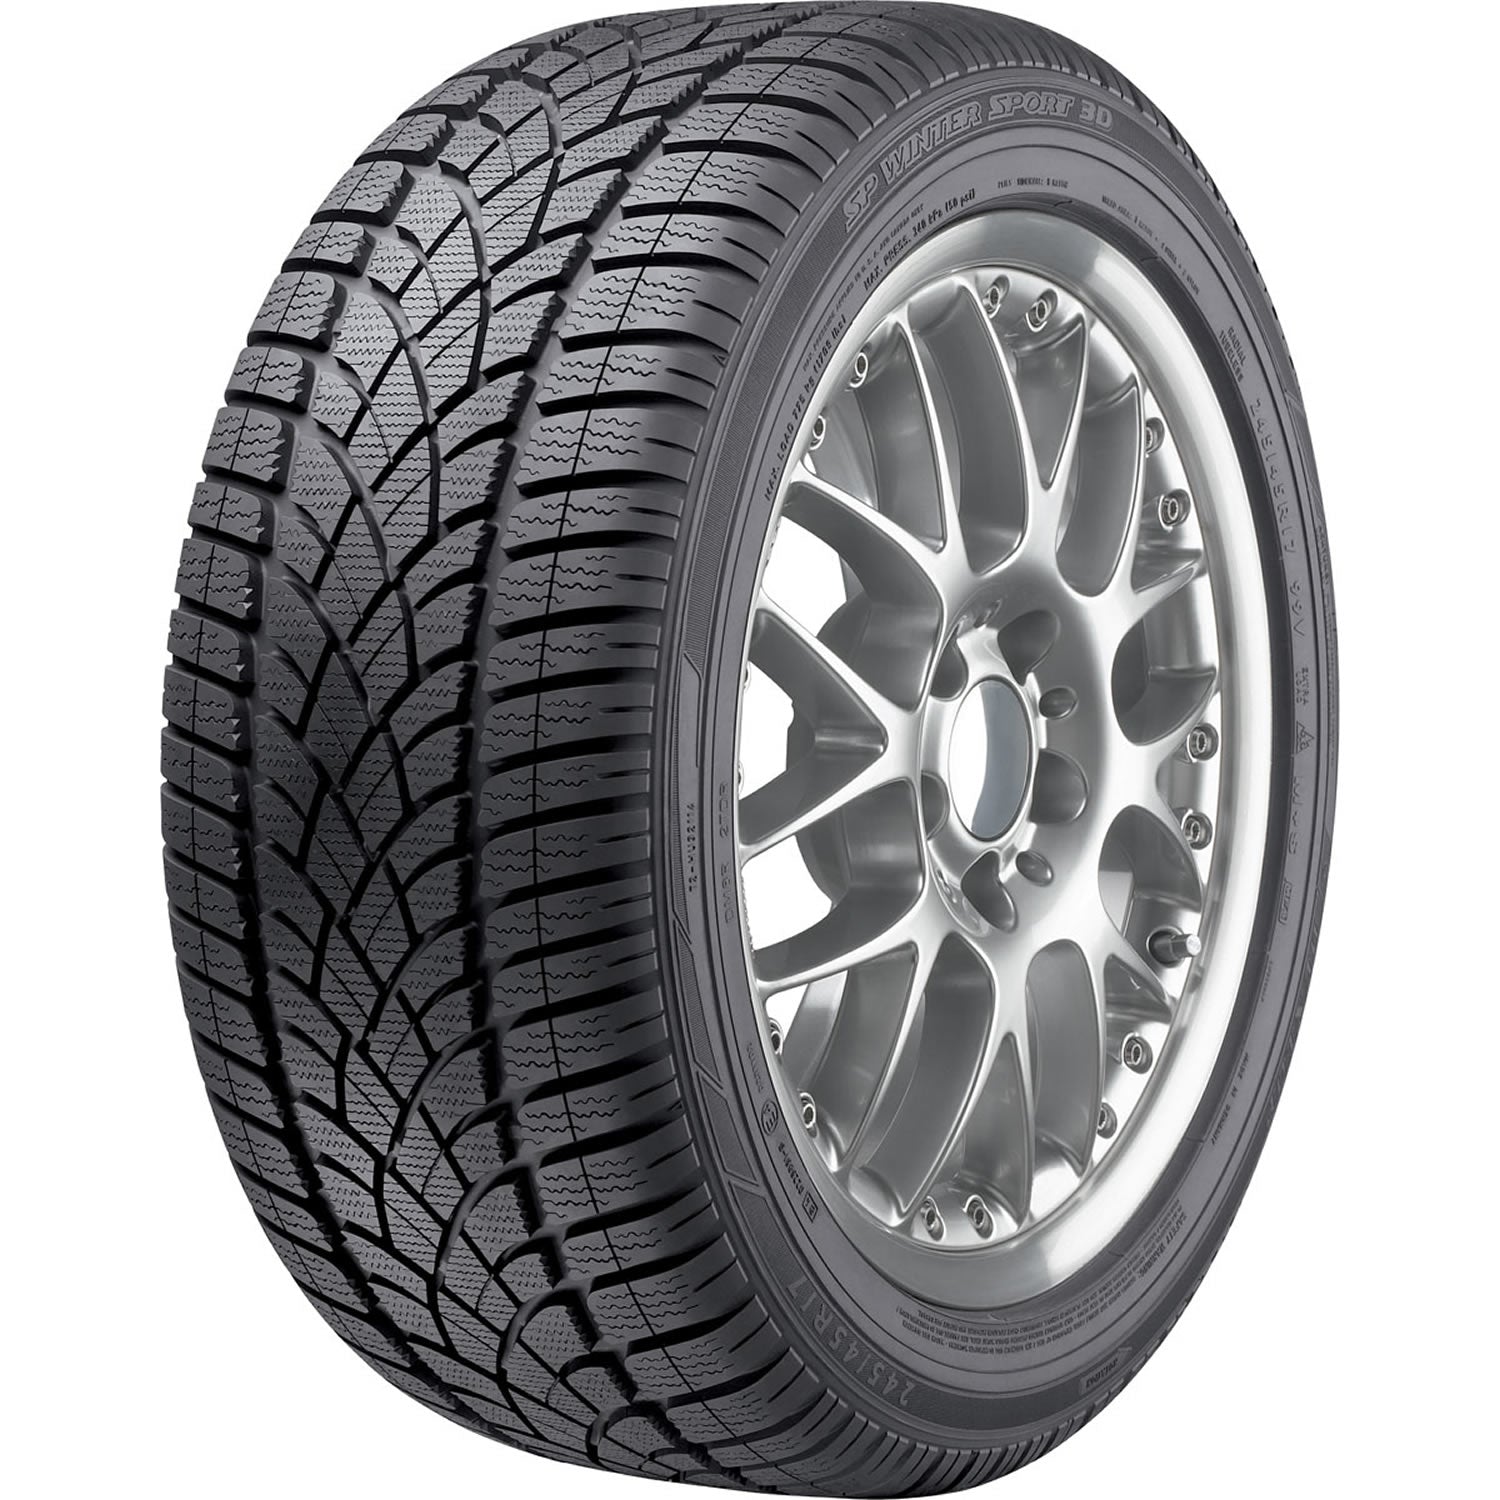 DUNLOP SP WINTER SPORT 3D 265/50R19 (29.5X10.9R 19) Tires